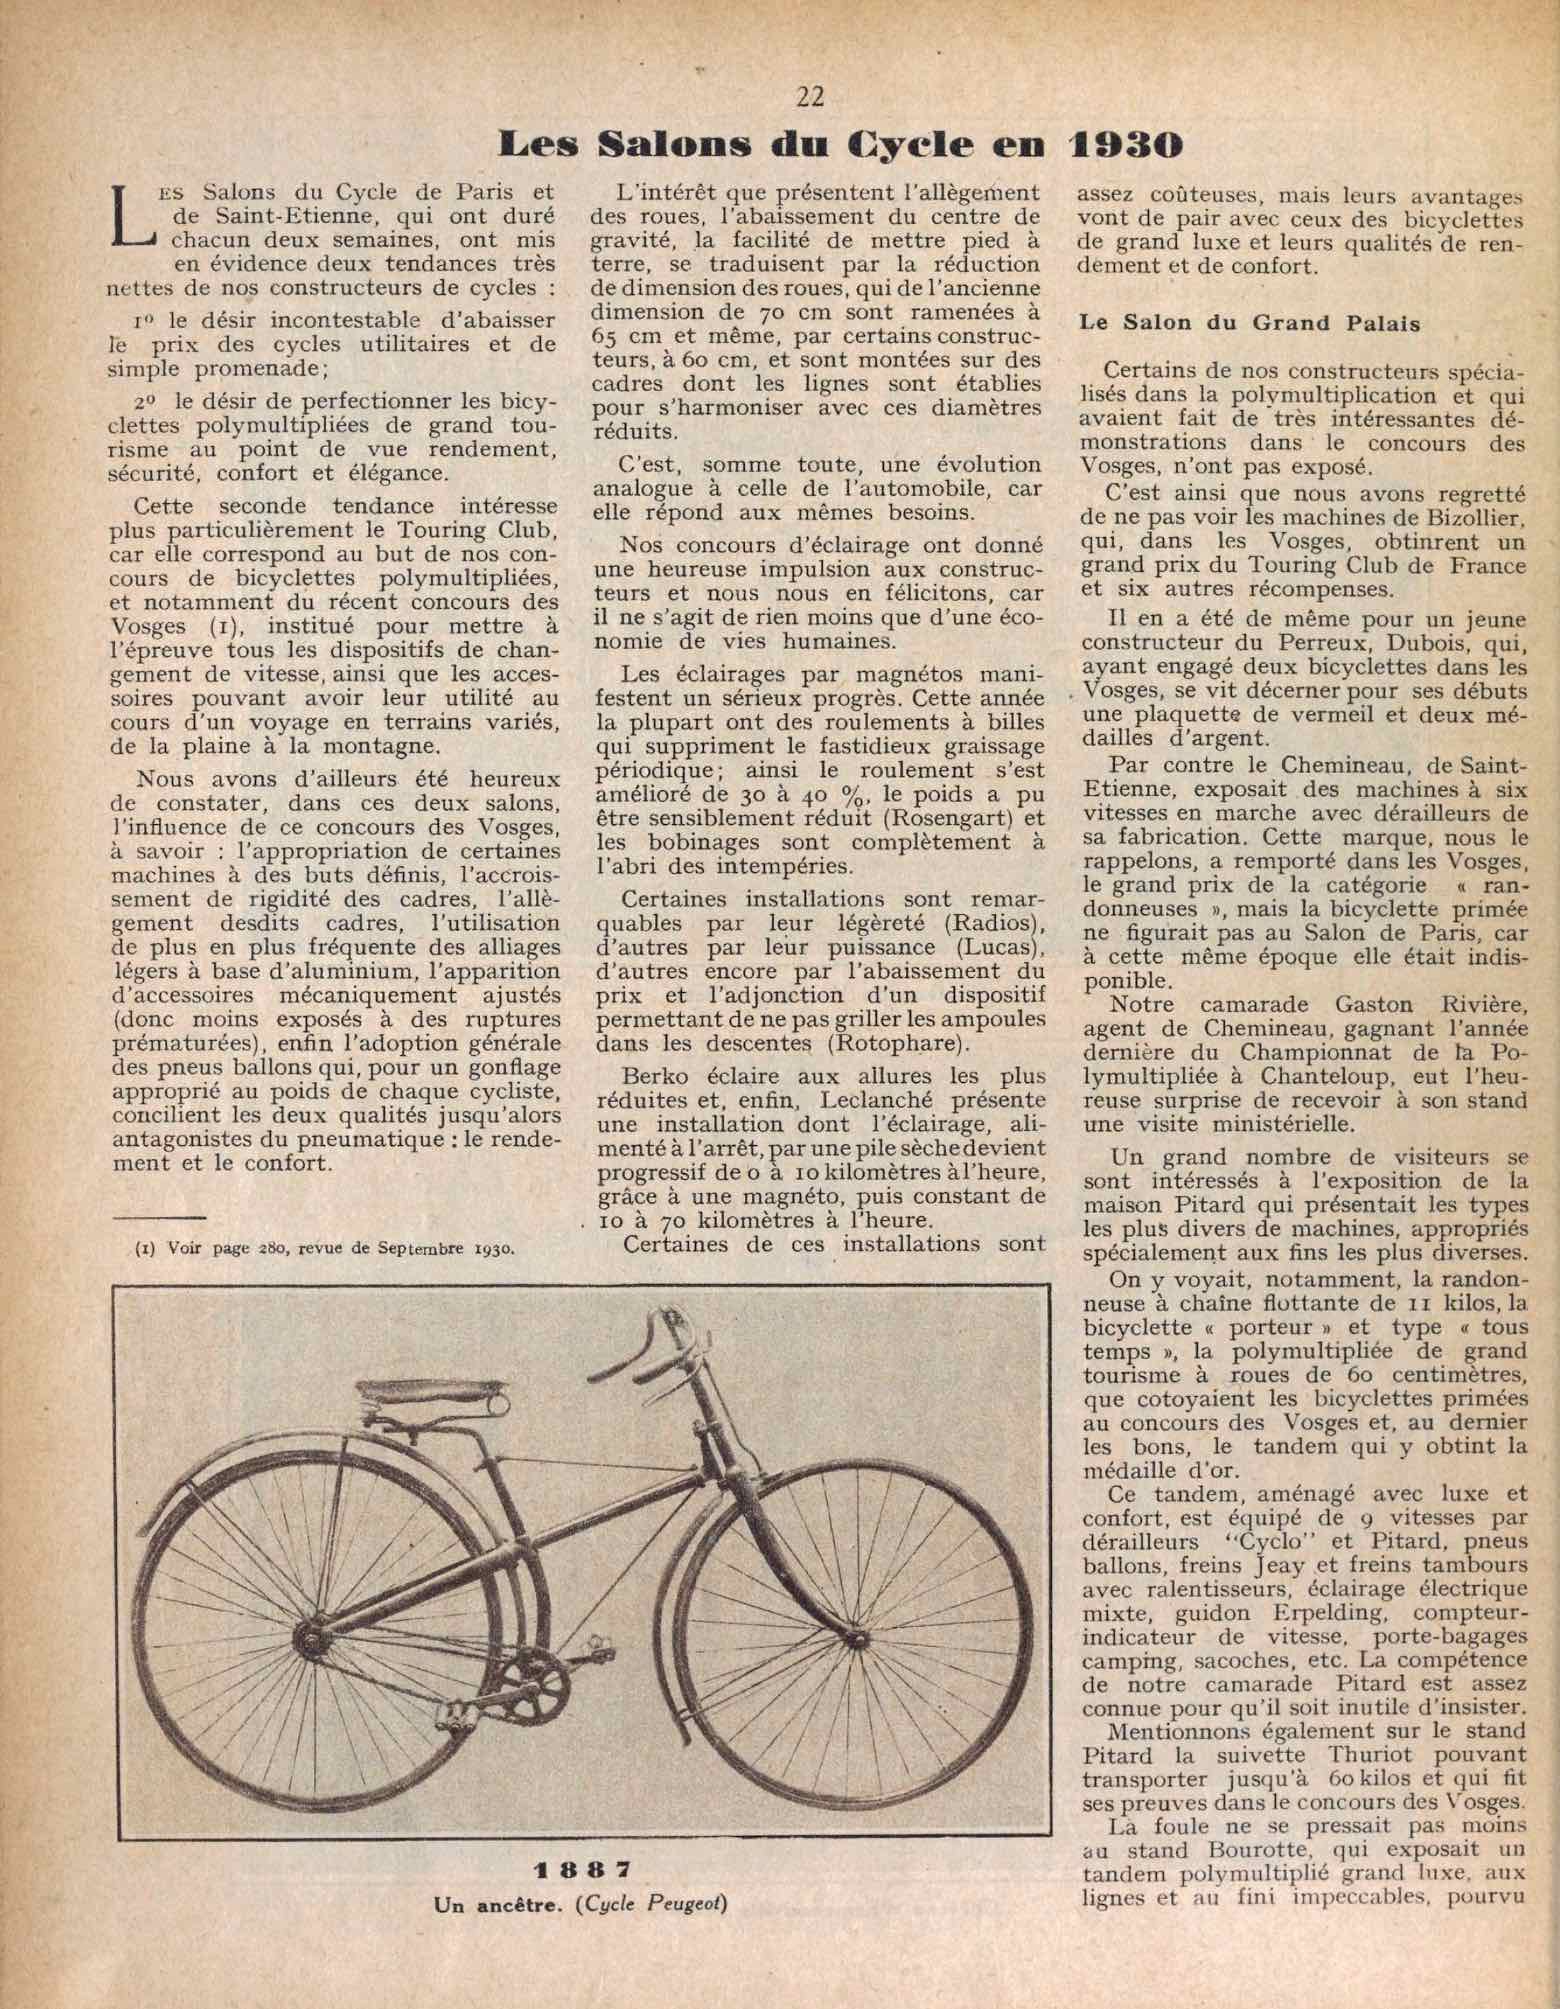 T.C.F. Revue Mensuelle January 1931 - Les Salons du Cycle en 1930 scan 1 main image